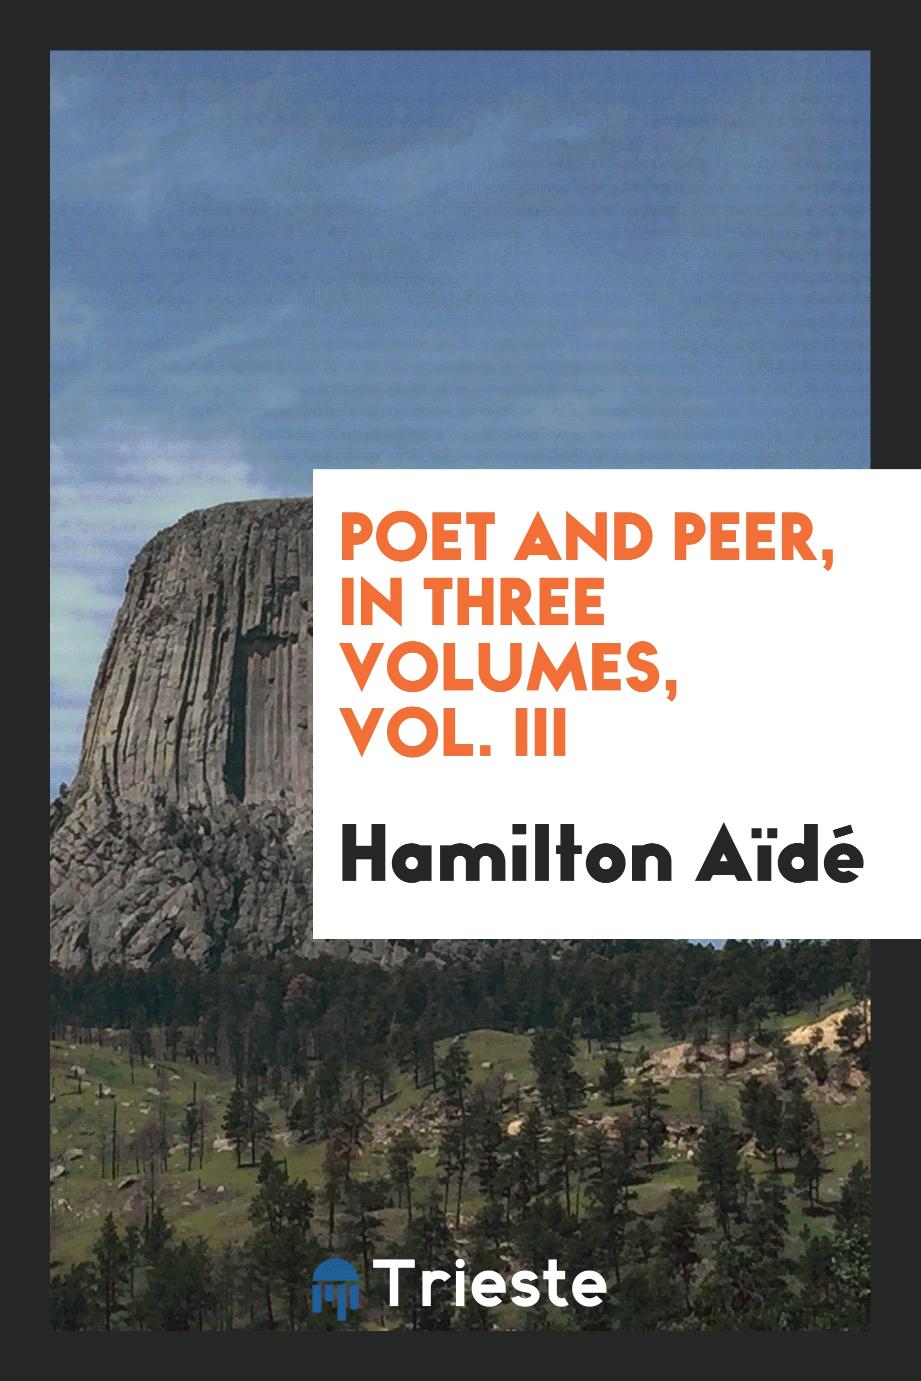 Poet and peer, in three volumes, Vol. III